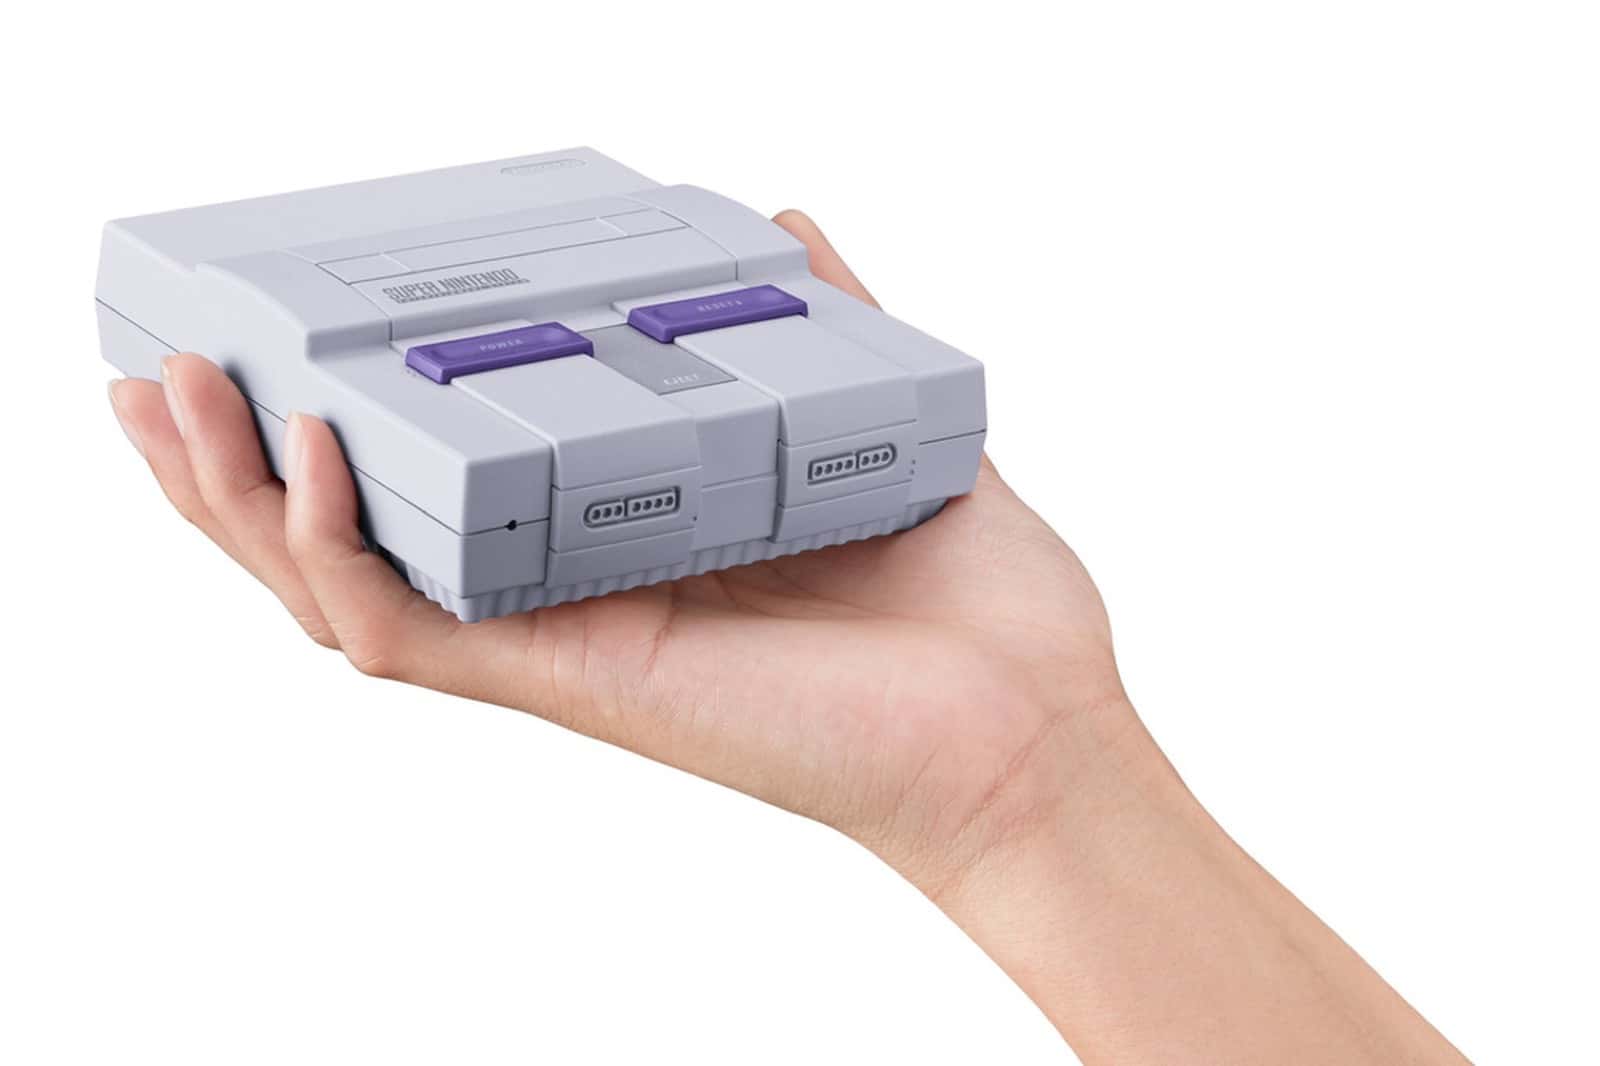 Nintendo Bringing Back Retro Games with Mini SNES Classic